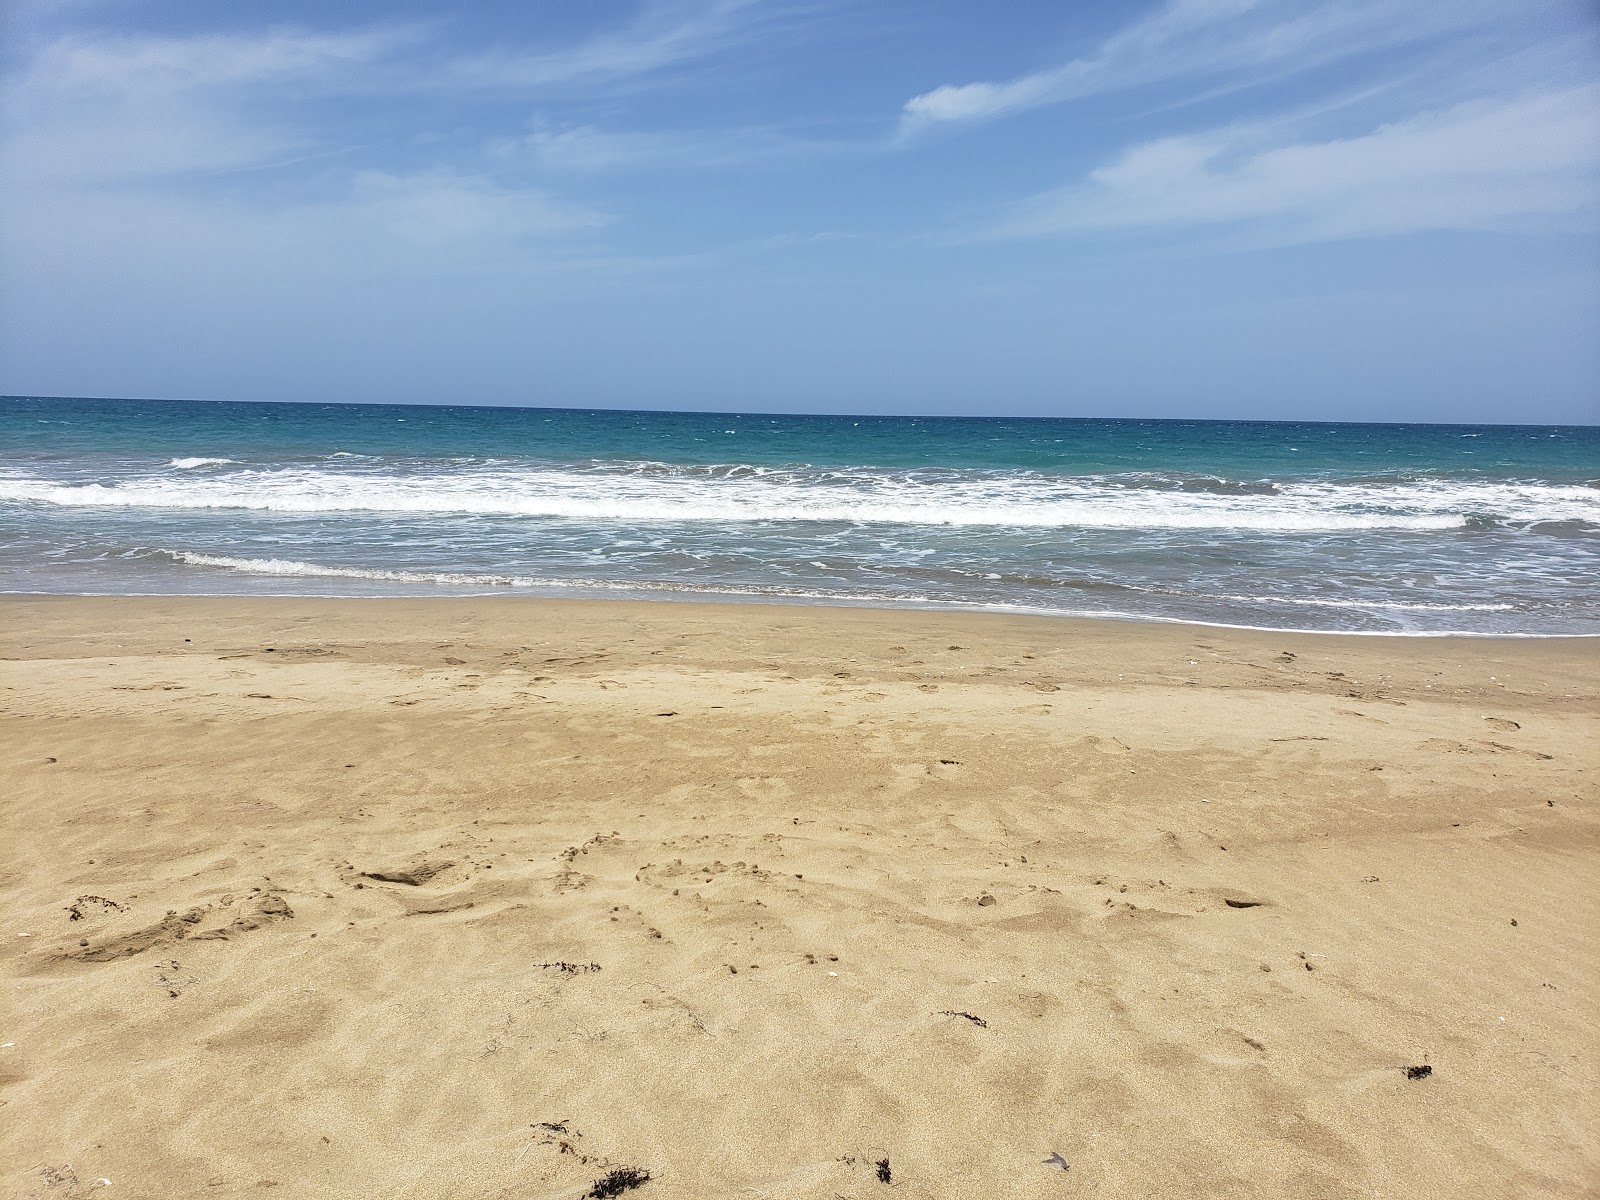 Zdjęcie El Unico beach - popularne miejsce wśród znawców relaksu